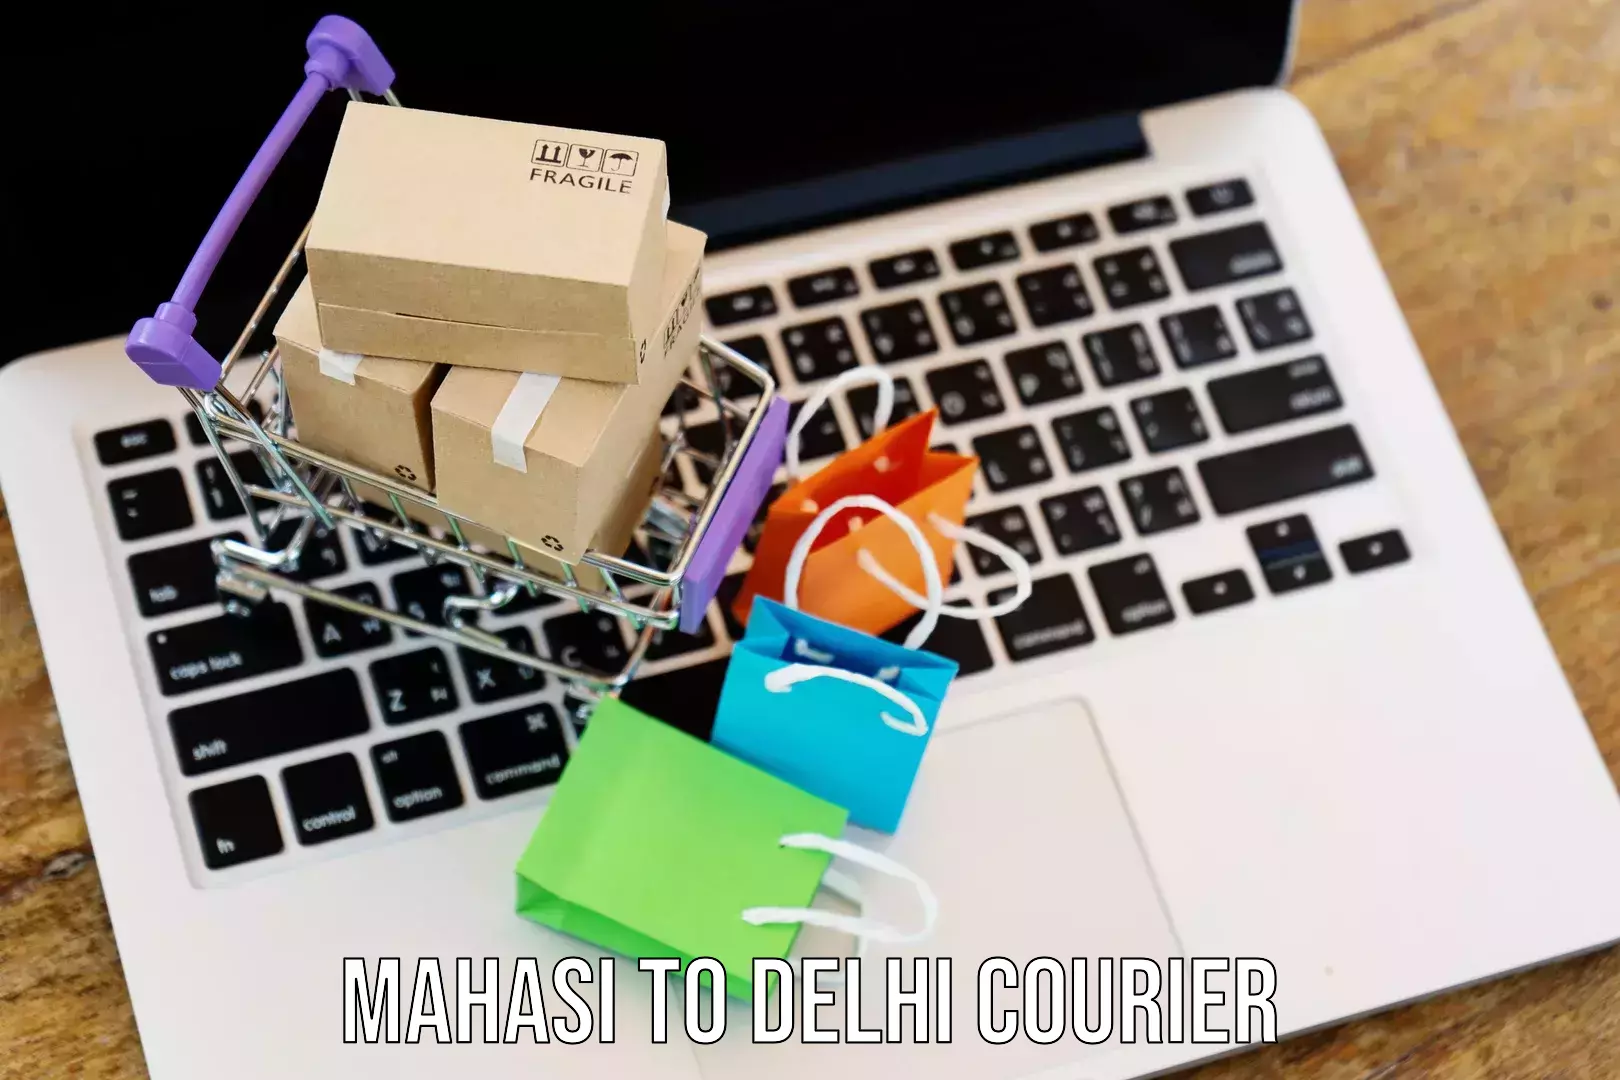 Express logistics service Mahasi to Delhi